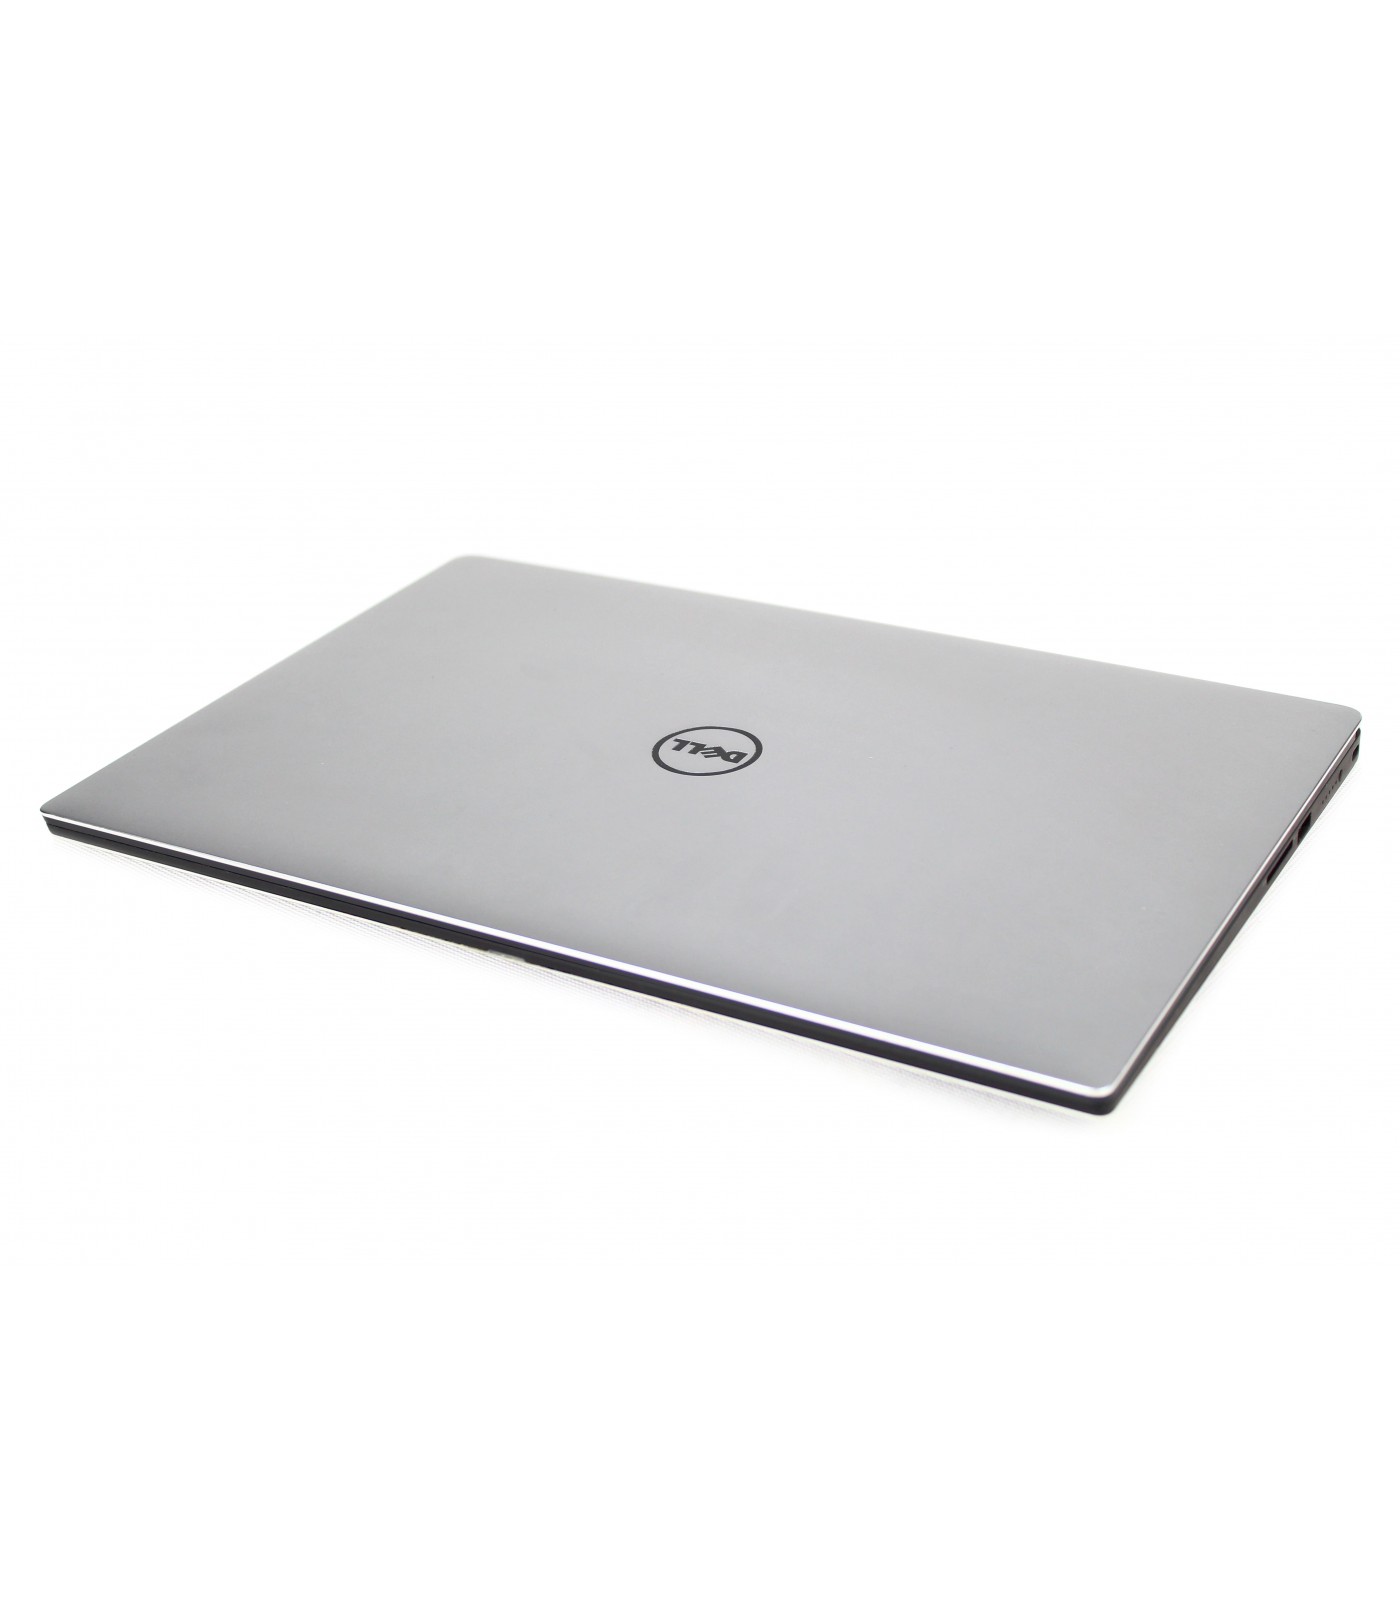 Poleasingowy laptop Dell Precision 5510 z Intel Xeon E3-1505M, 1920x1080 IPS, Klasa A